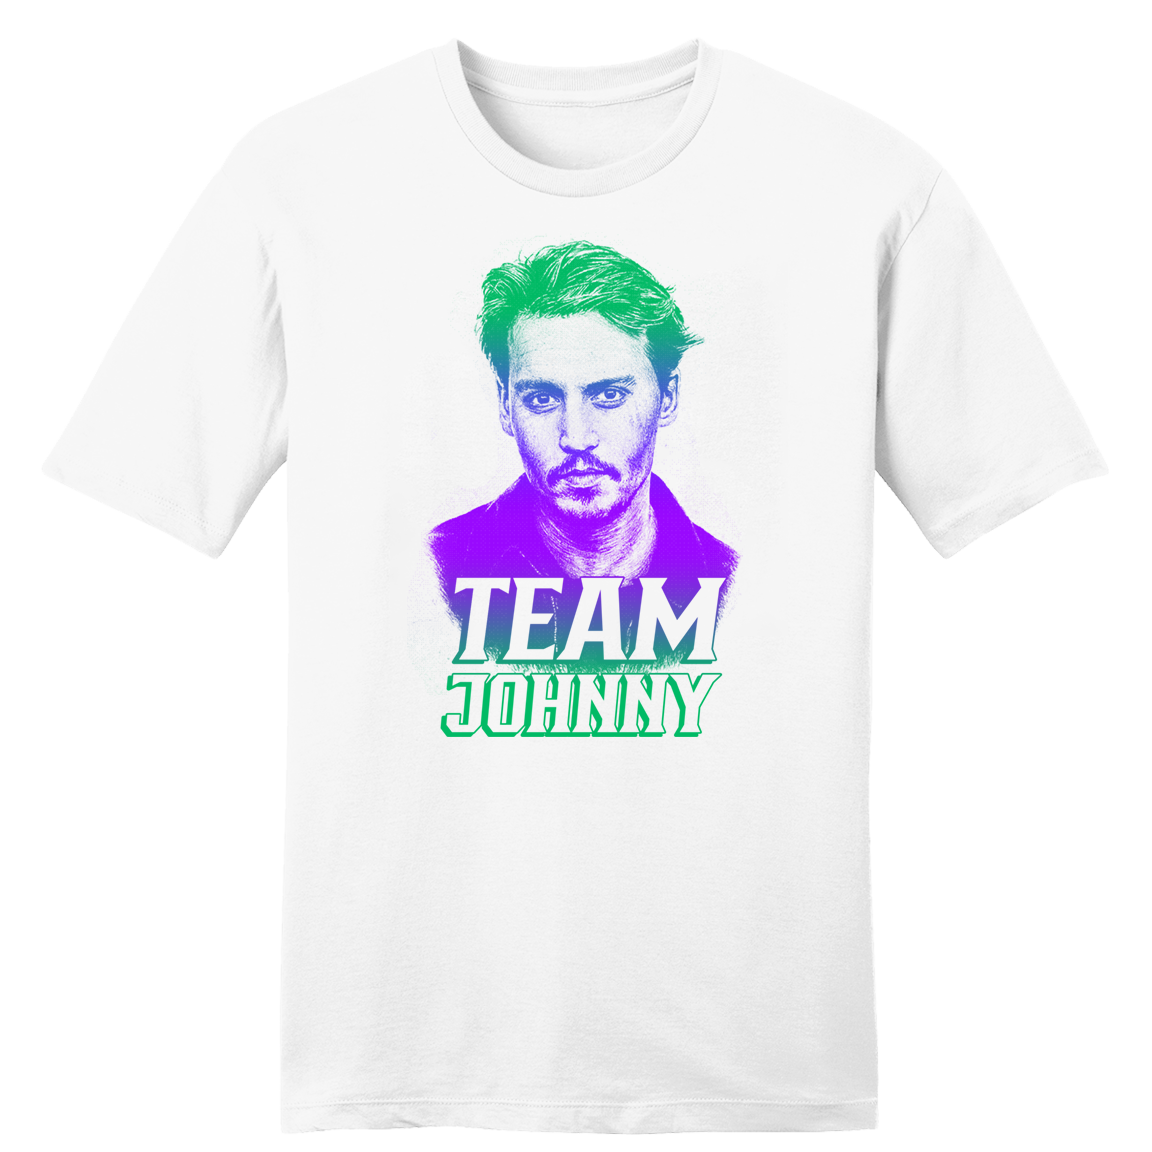 Team Johnny tee